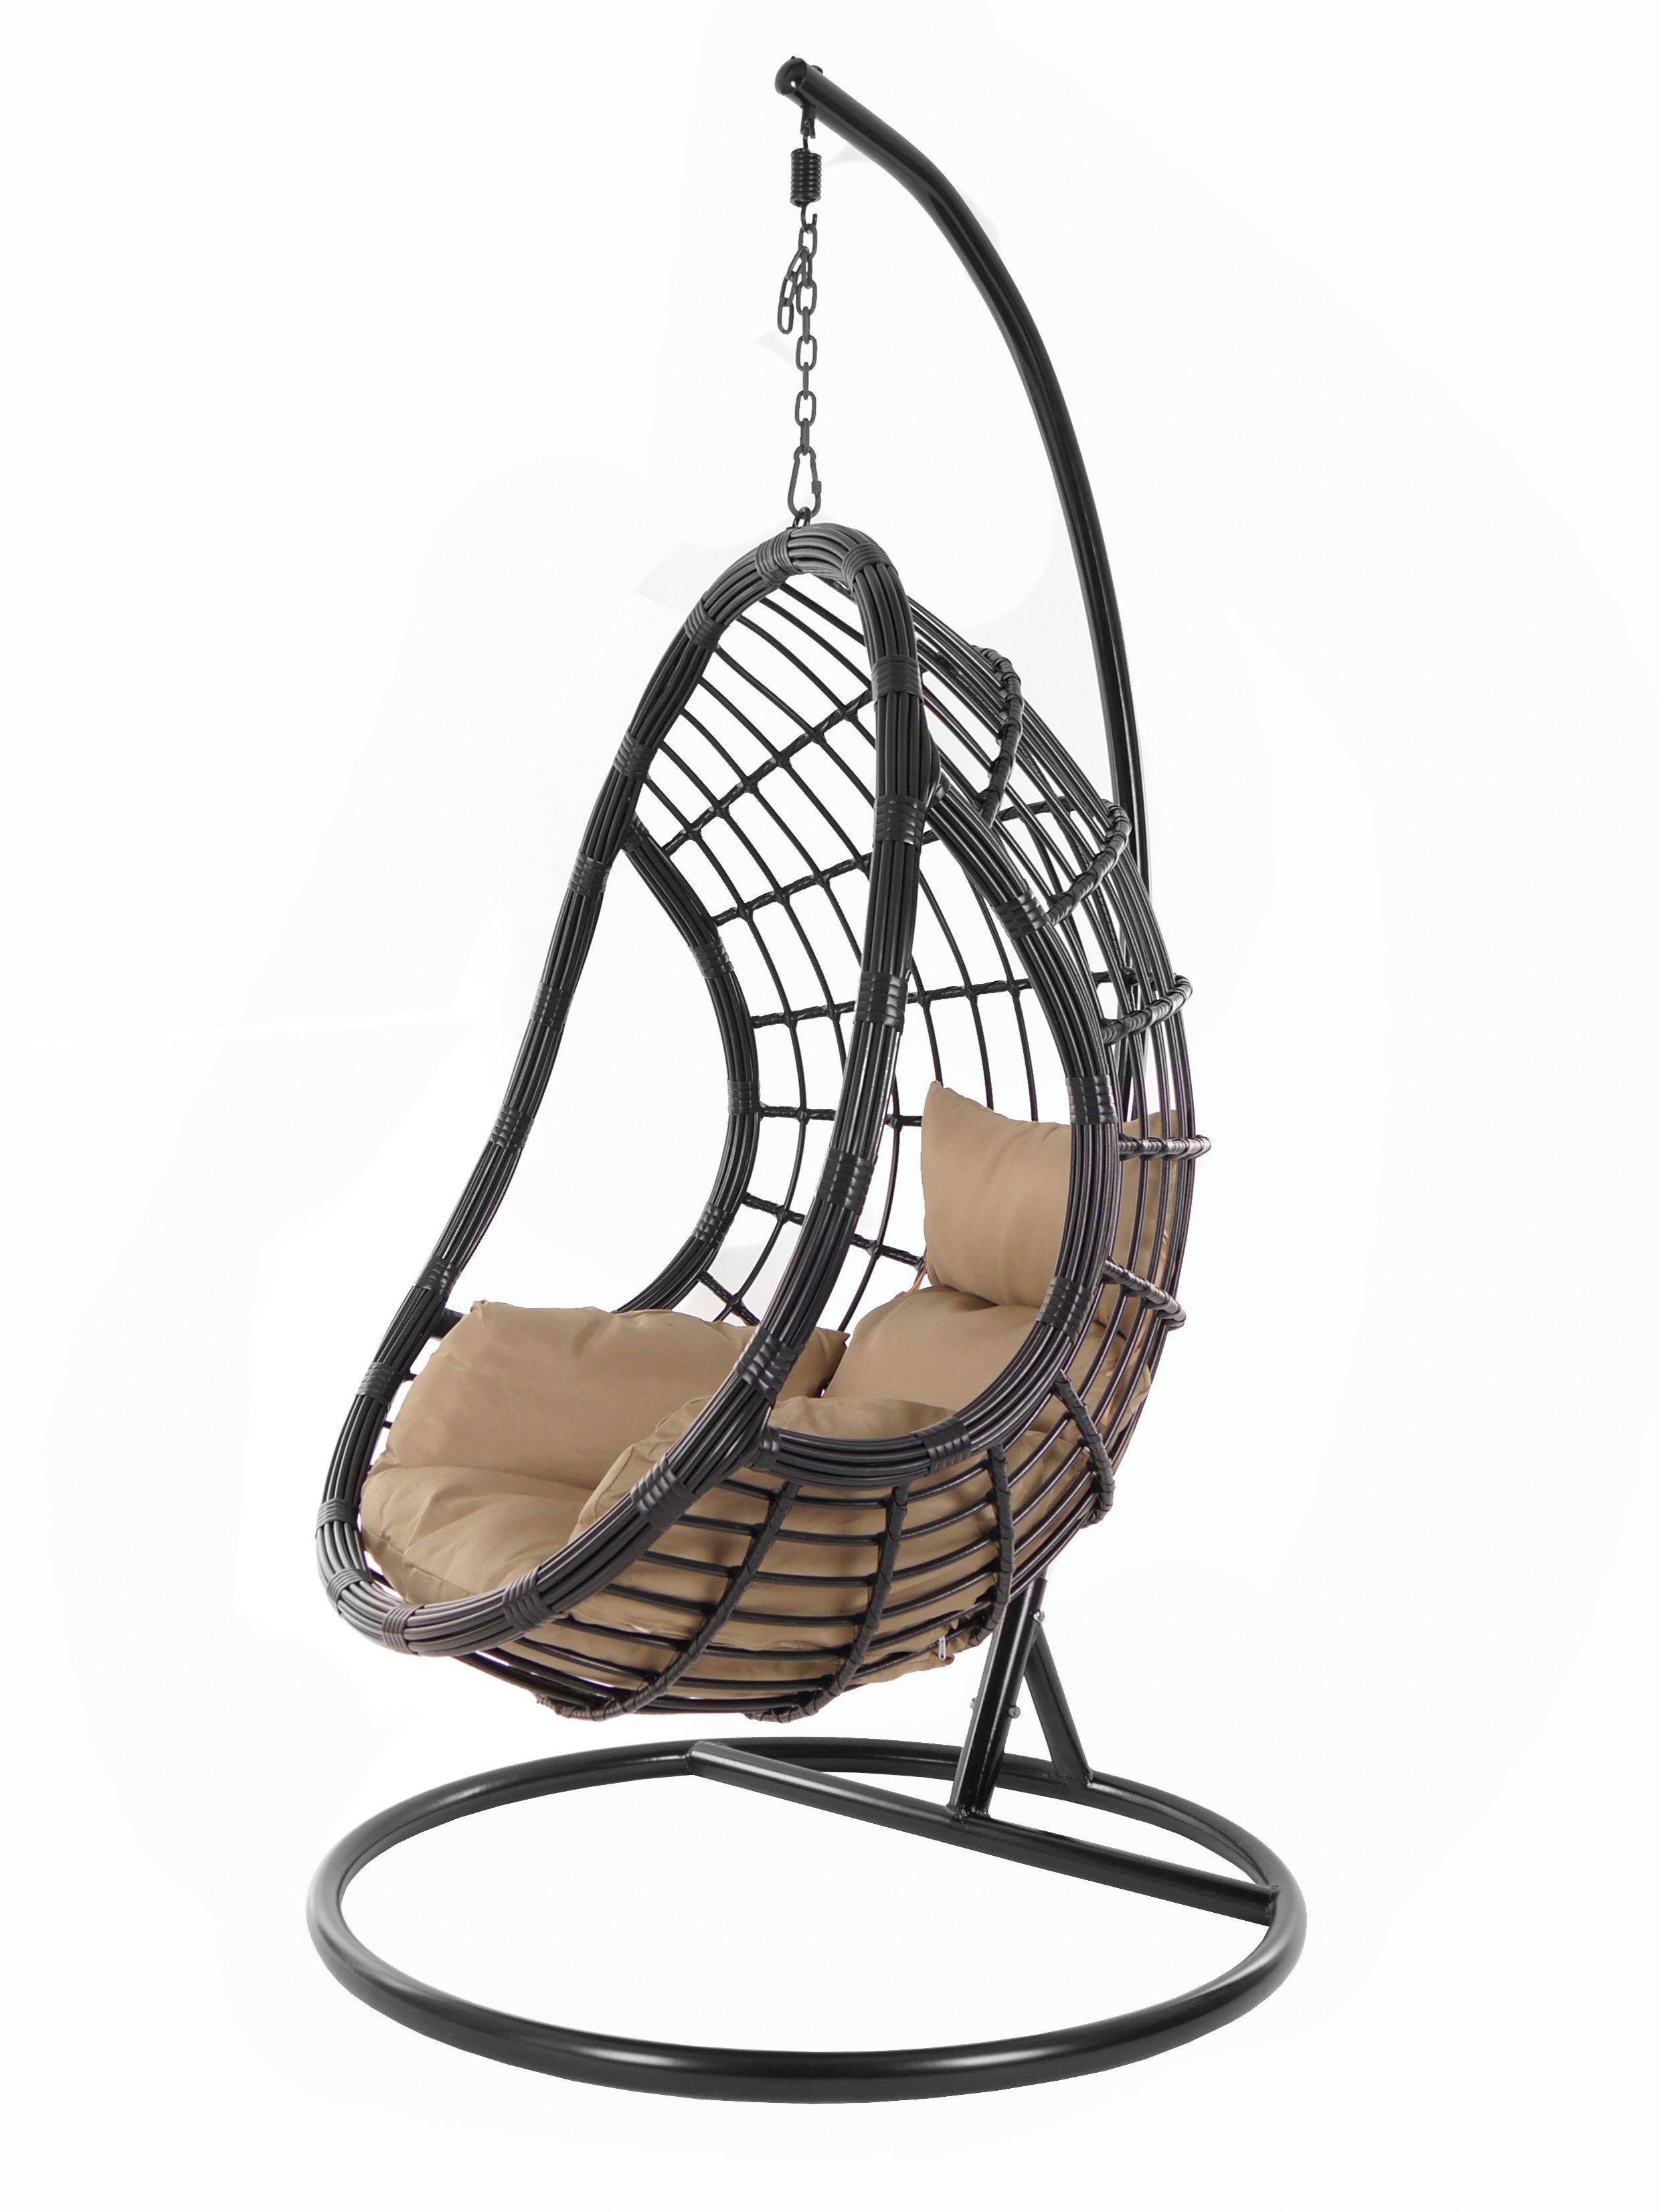 KIDEO Hängesessel PALMANOVA black, Schwebesessel, Swing Chair, Hängesessel mit Gestell und Kissen, Nest-Kissen haselnuss (7010 hazelnut)